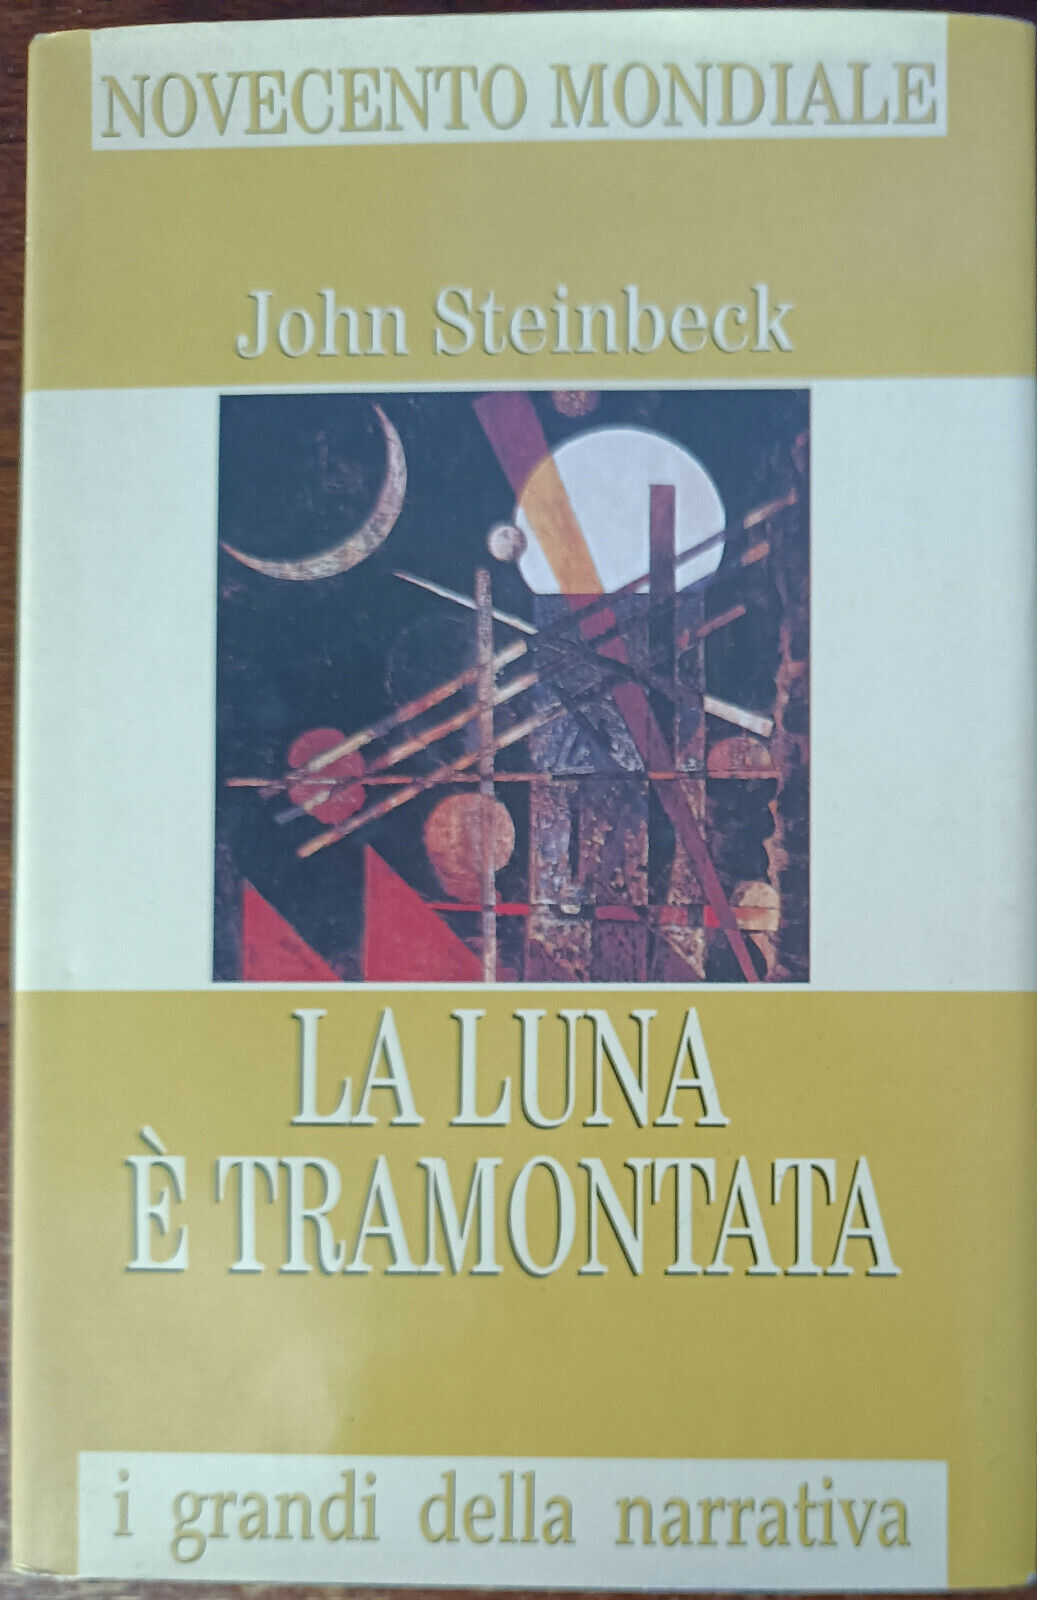 La luna ? tramontata -  John Steinbeck - Famiglia Cristiana, 1998 - A